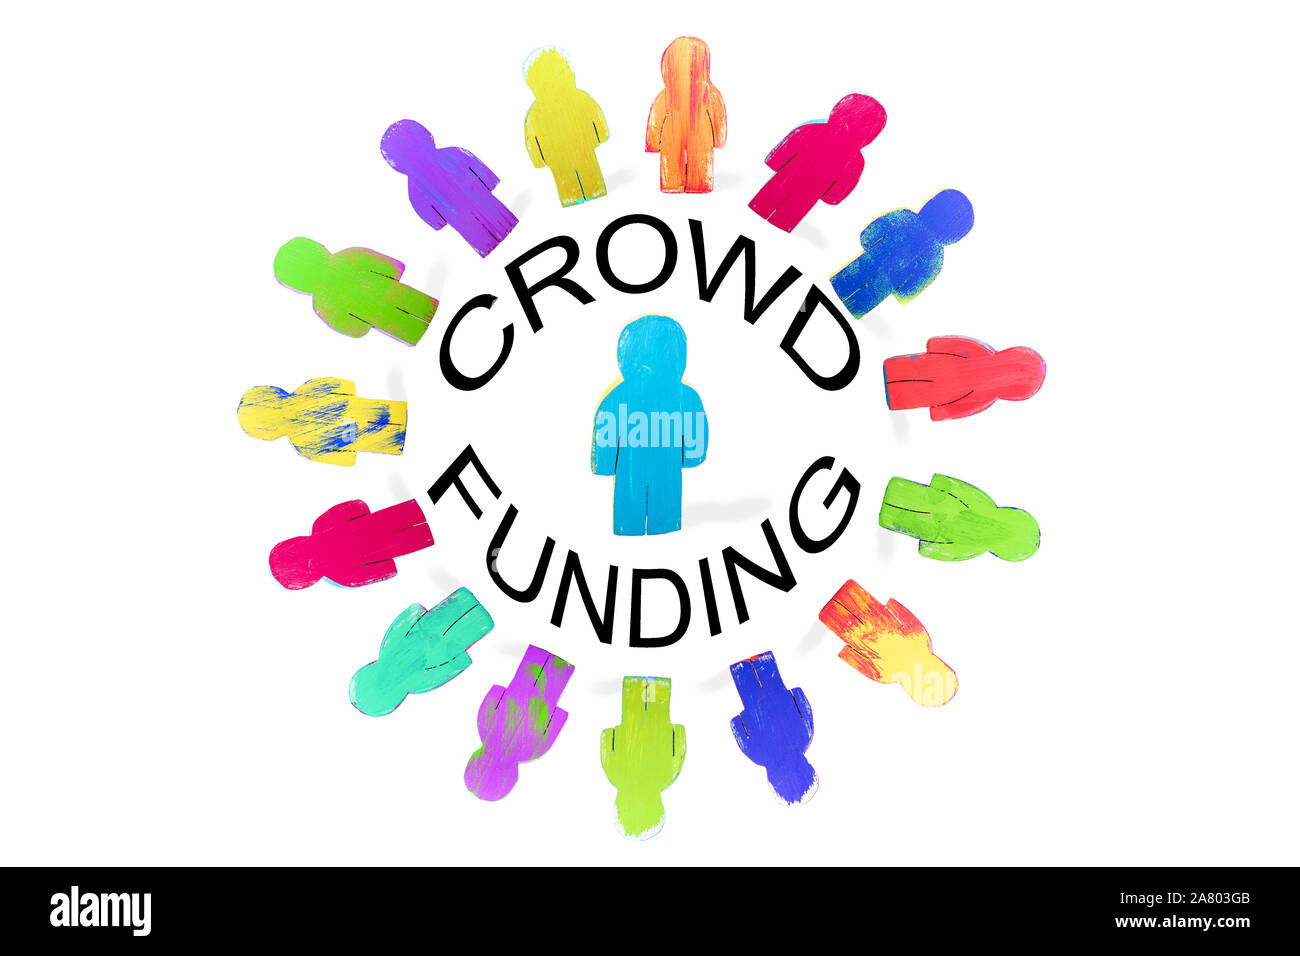 Diverses figures en bois dans un cercle, word Crowdfunding, financement et investissement concept foule, isolé Banque D'Images